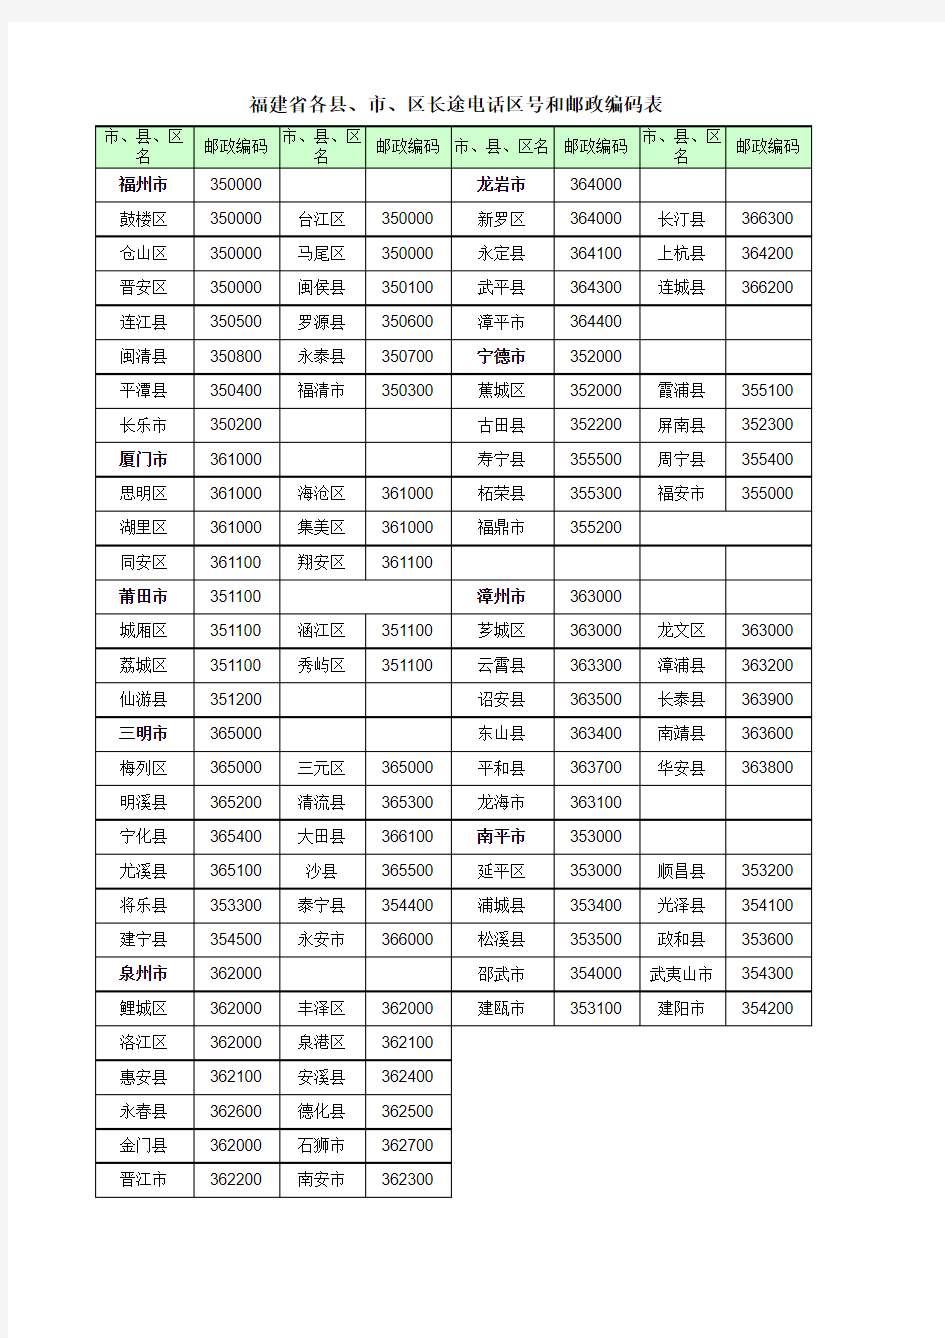 福建省各县、市、区长途电话区号和邮政编码表